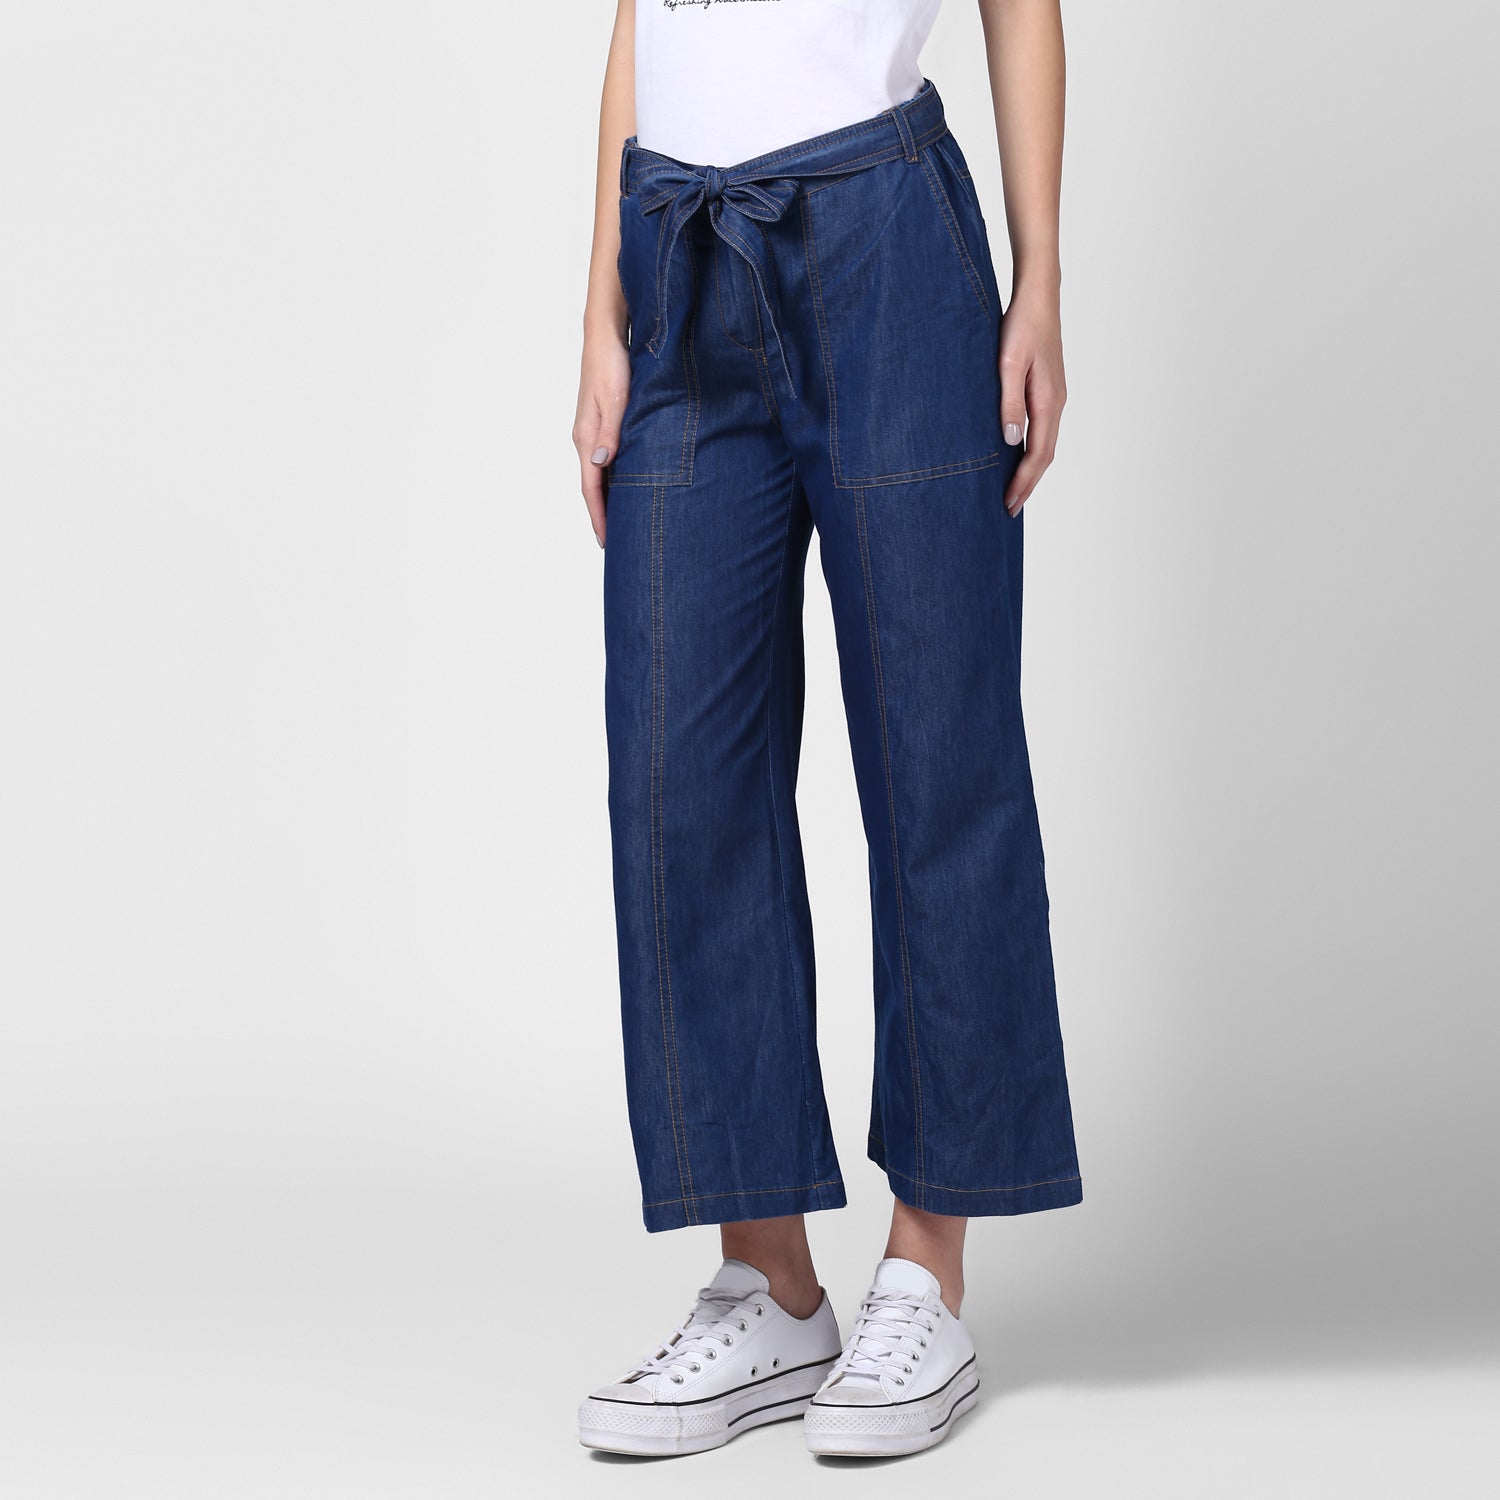 Women's Blue Denim Trousers with belt - StyleStone